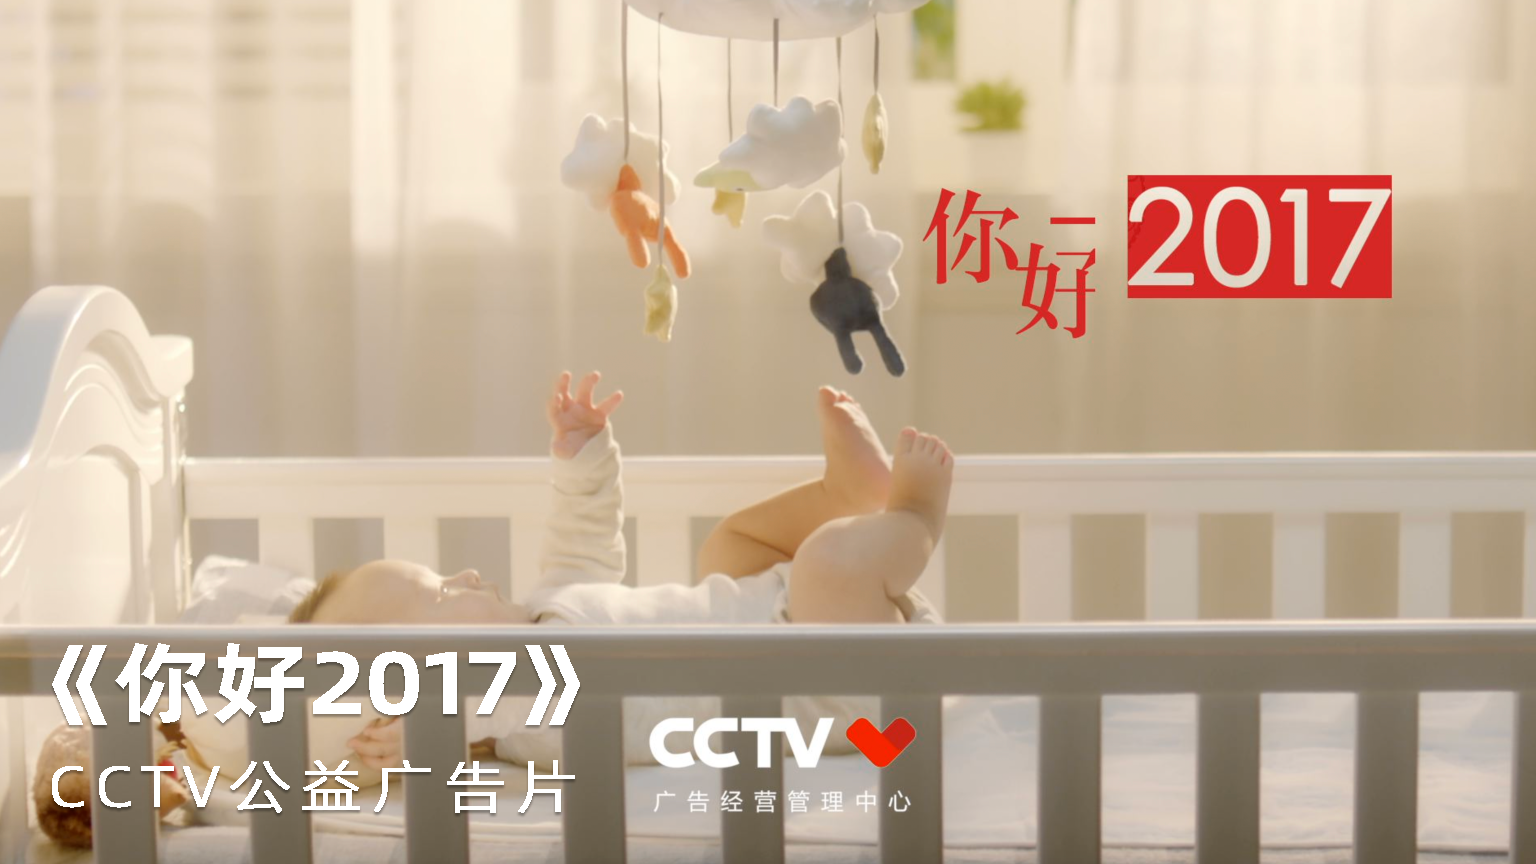 《你好2017》 CCTV公益广告片宣传片